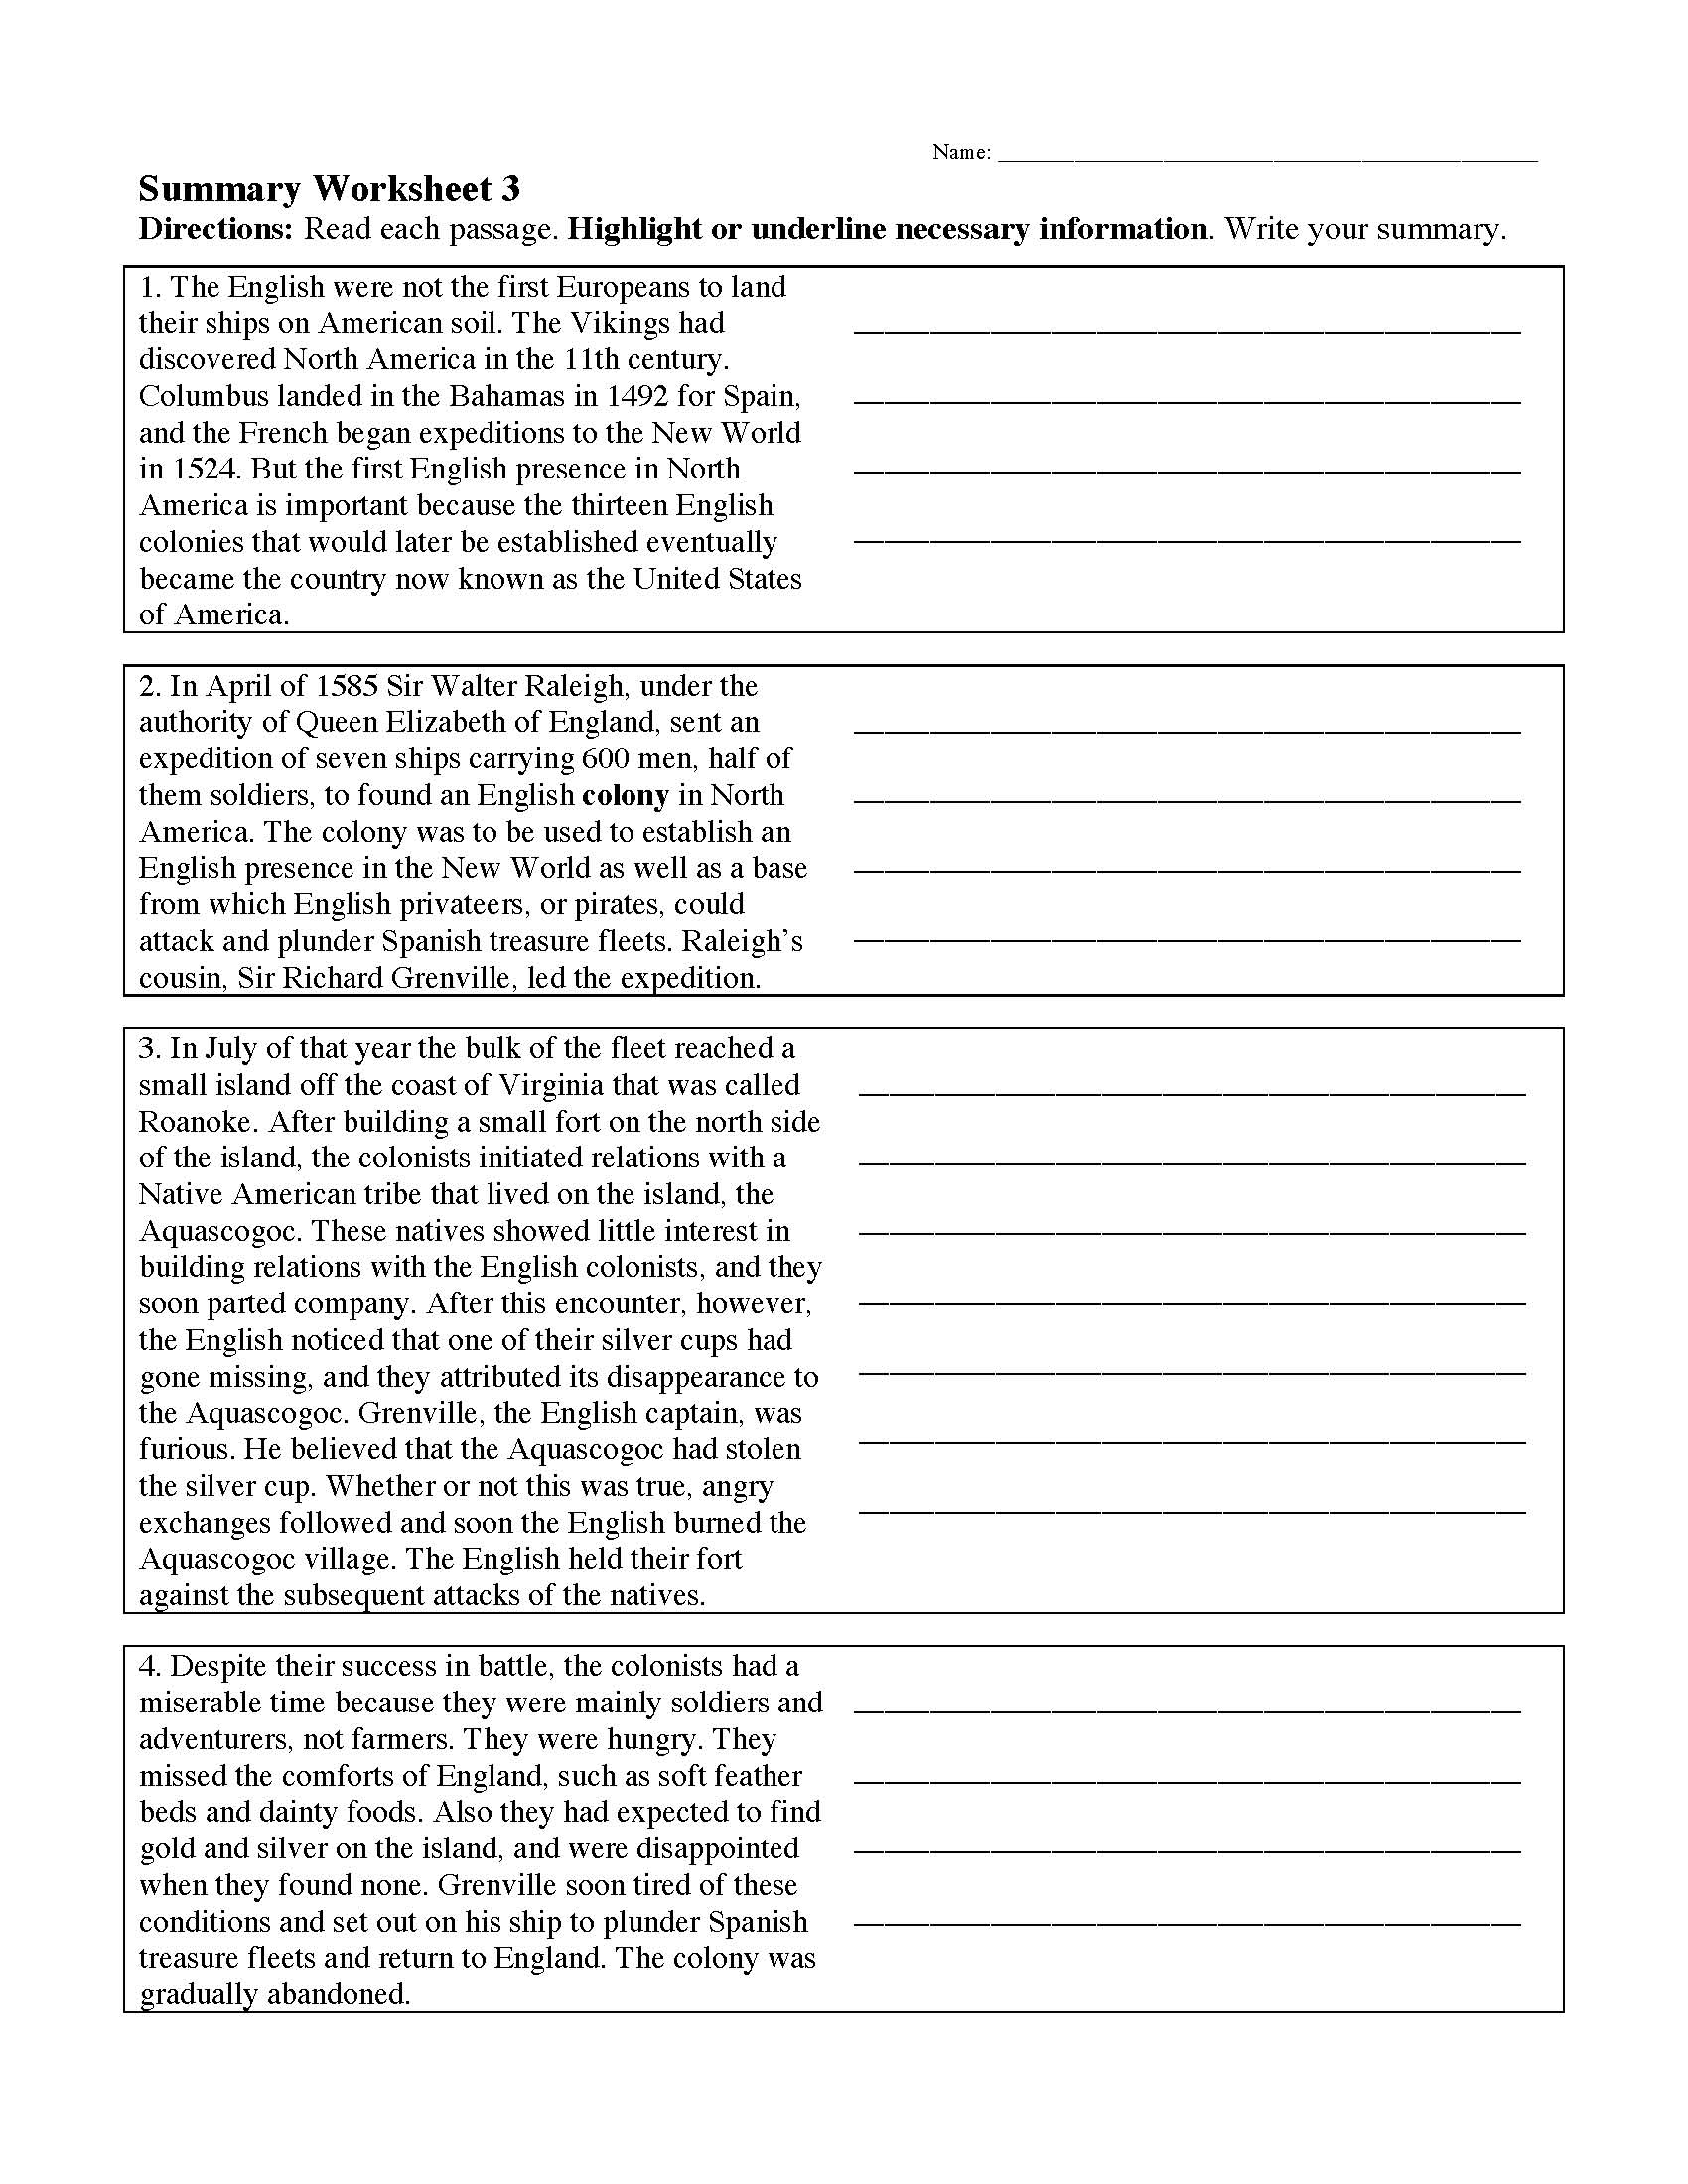 paraphrasing and summarizing exercises pdf